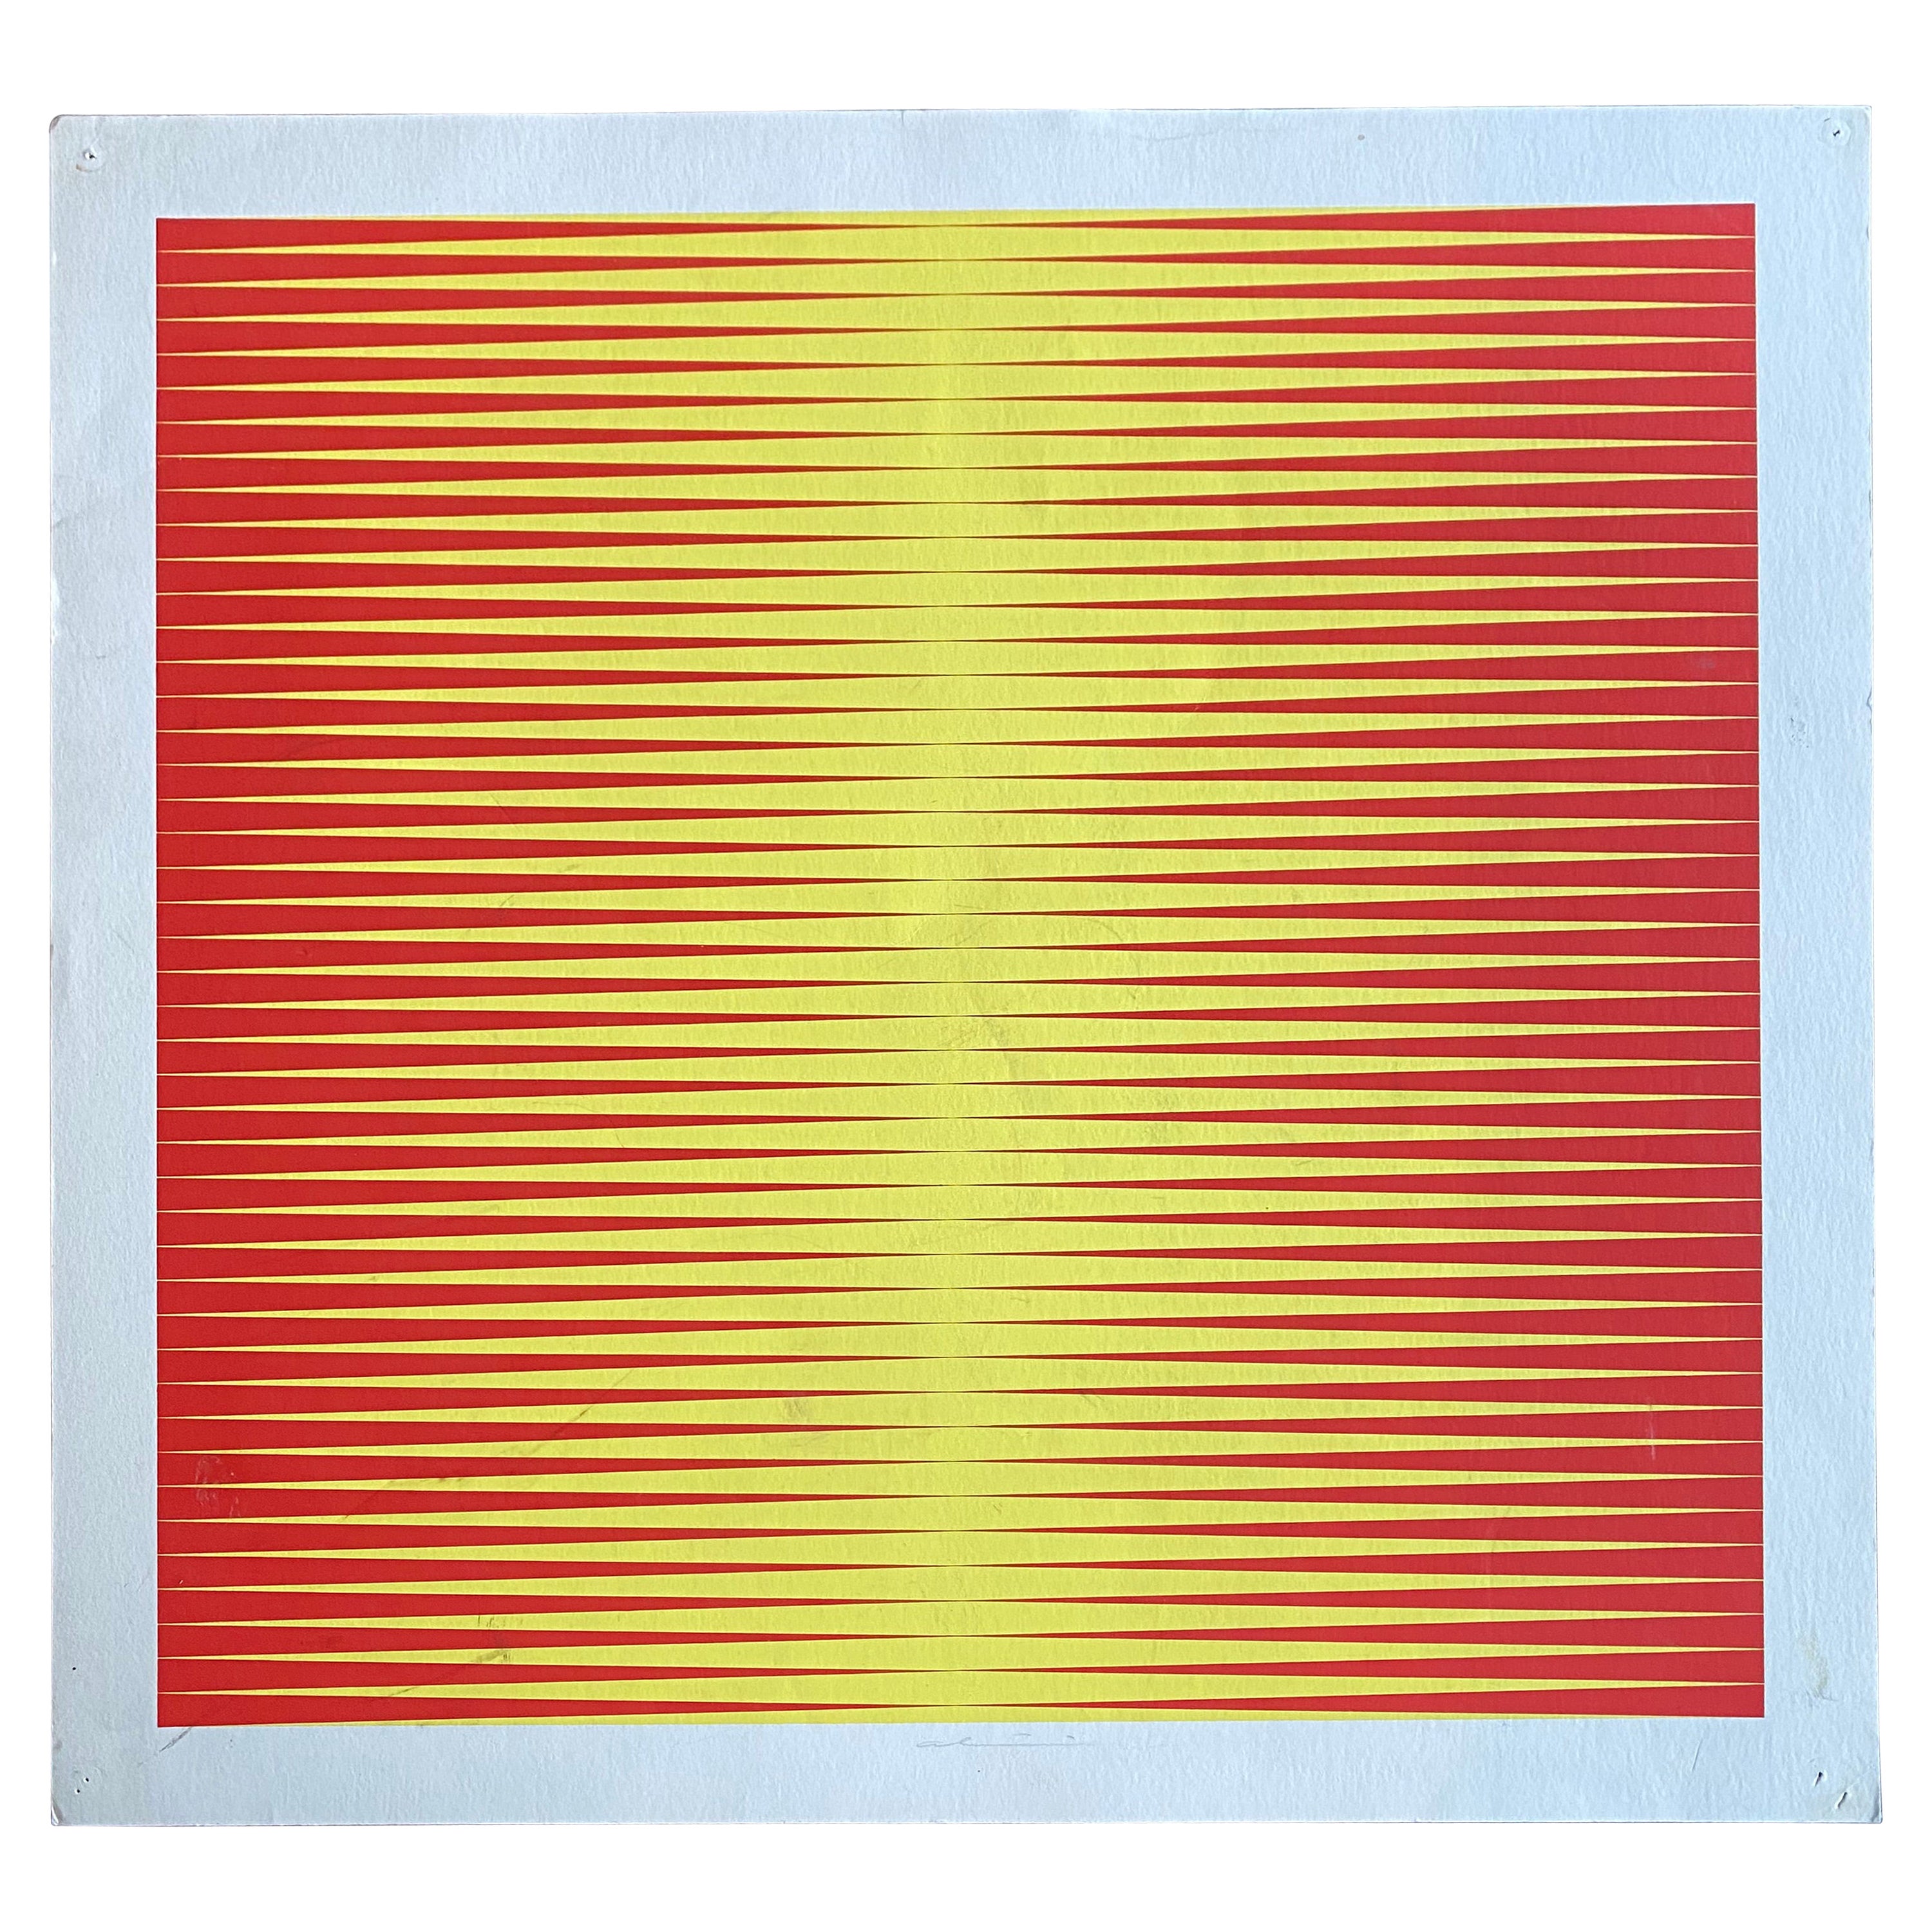 Siebdruck des italienischen Op-Art-Künstlers Getulio Alviani, gelb-rot